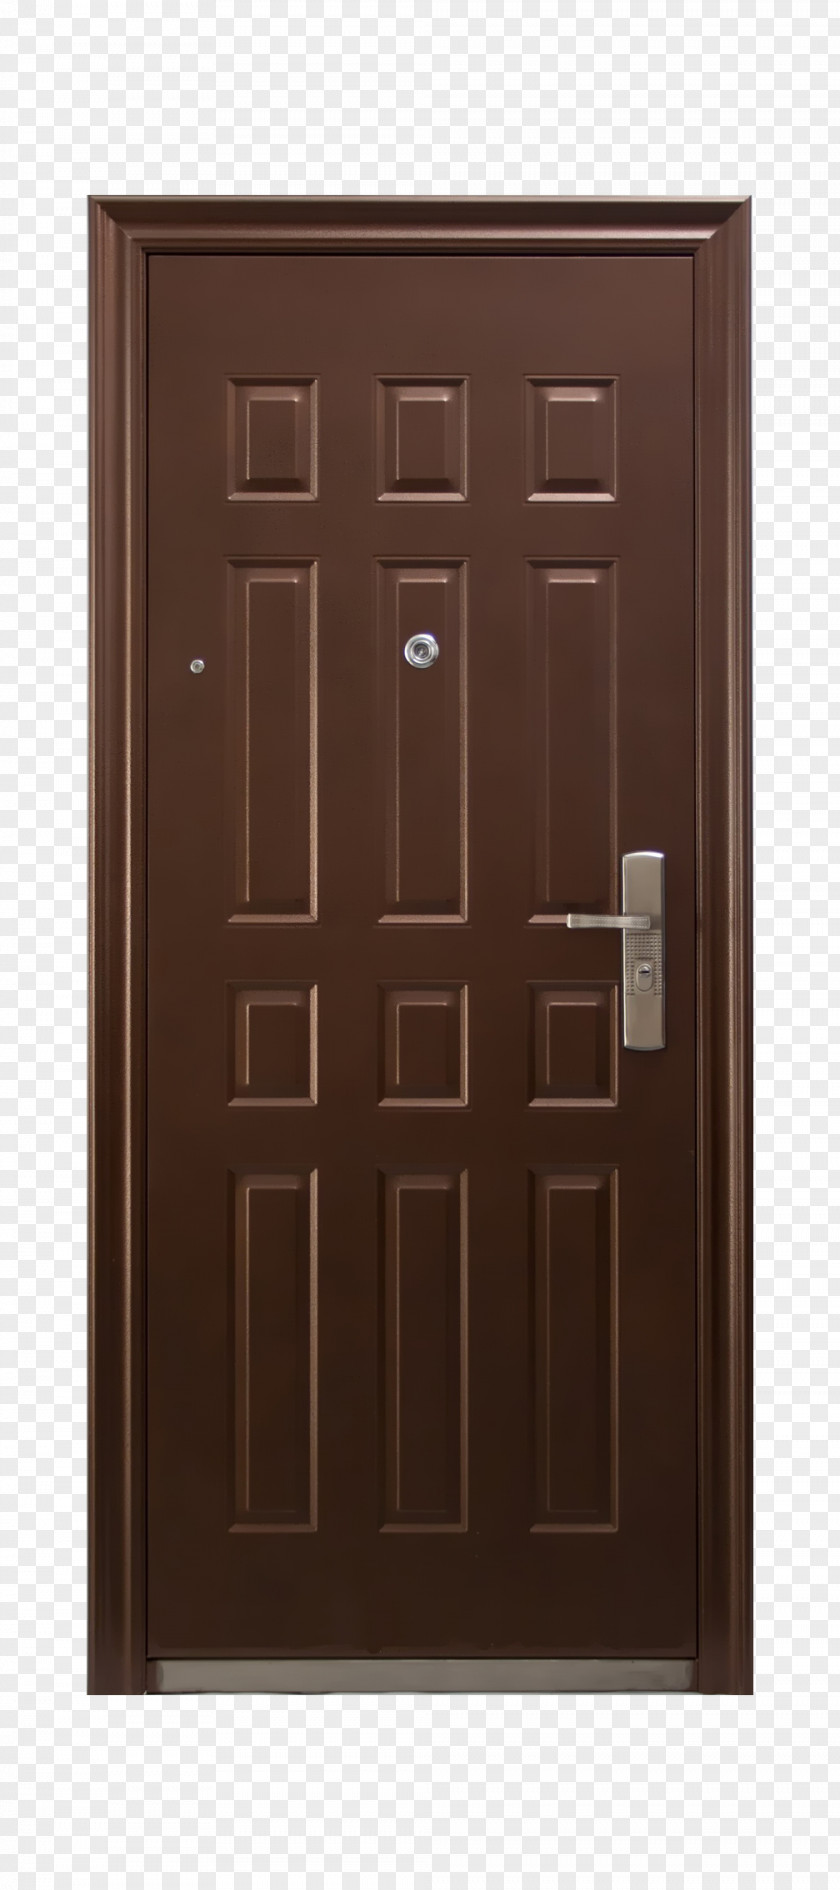 Home Security Door Sliding Glass PNG